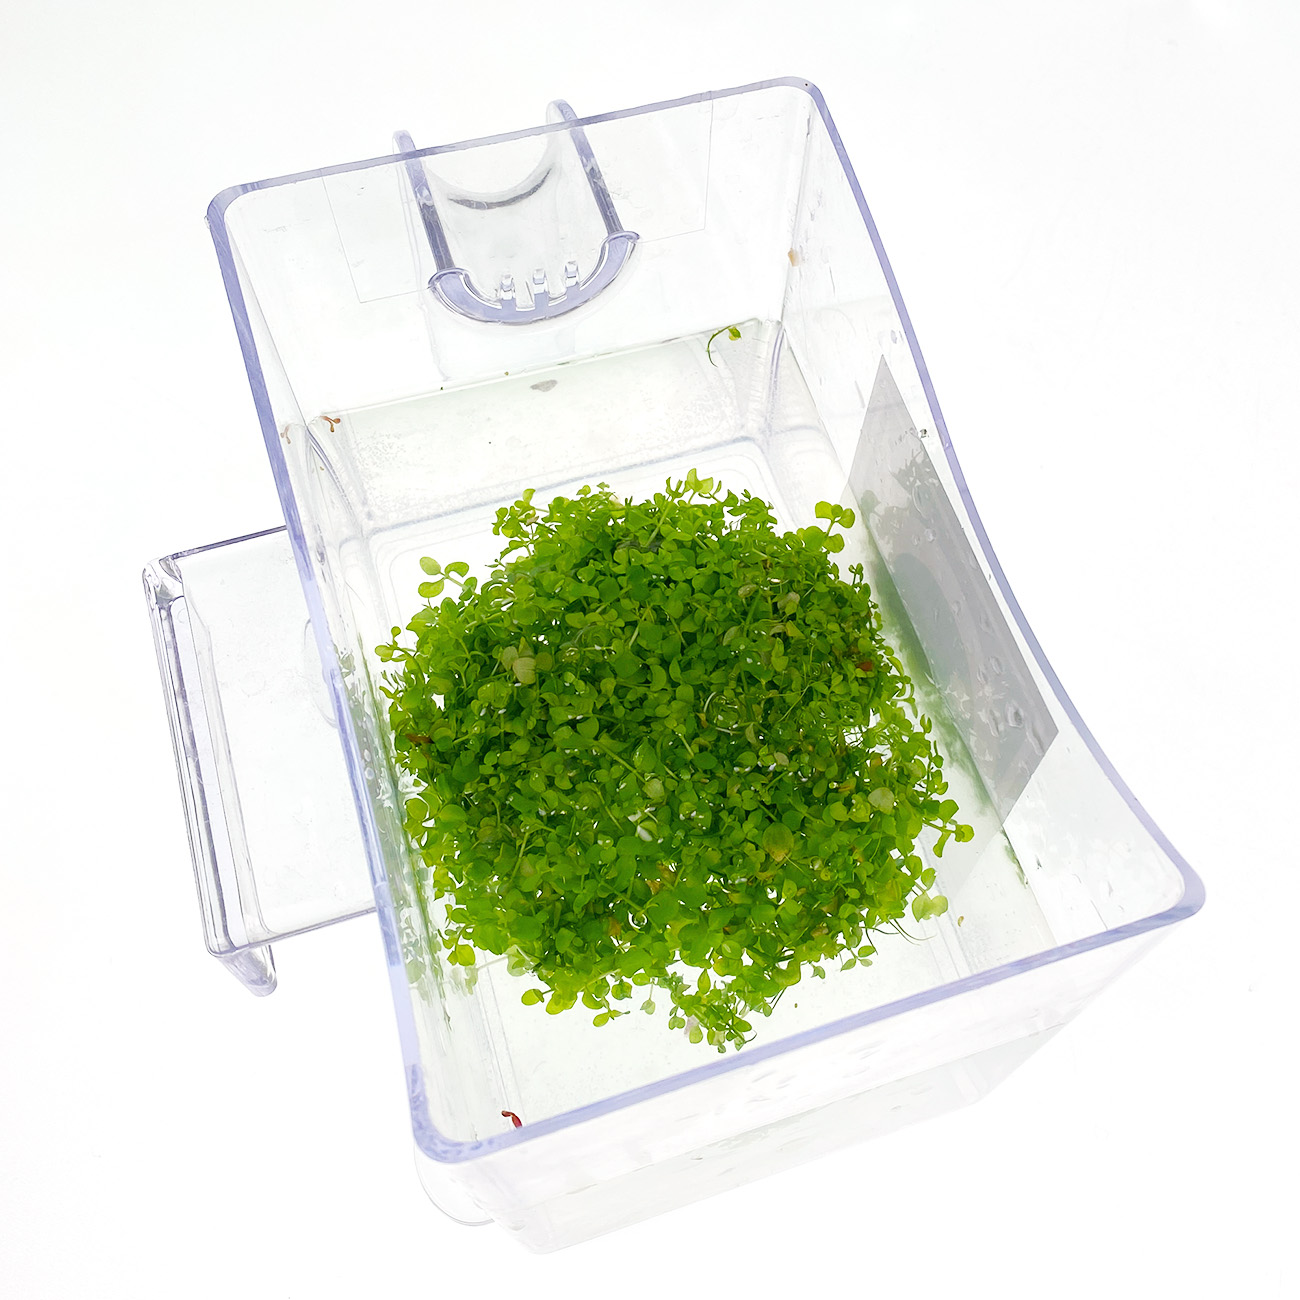 Micranthemum montecarlo wird in Wasser eingelegt, um das Nährgel aus der in vitro Zucht abzuspülen